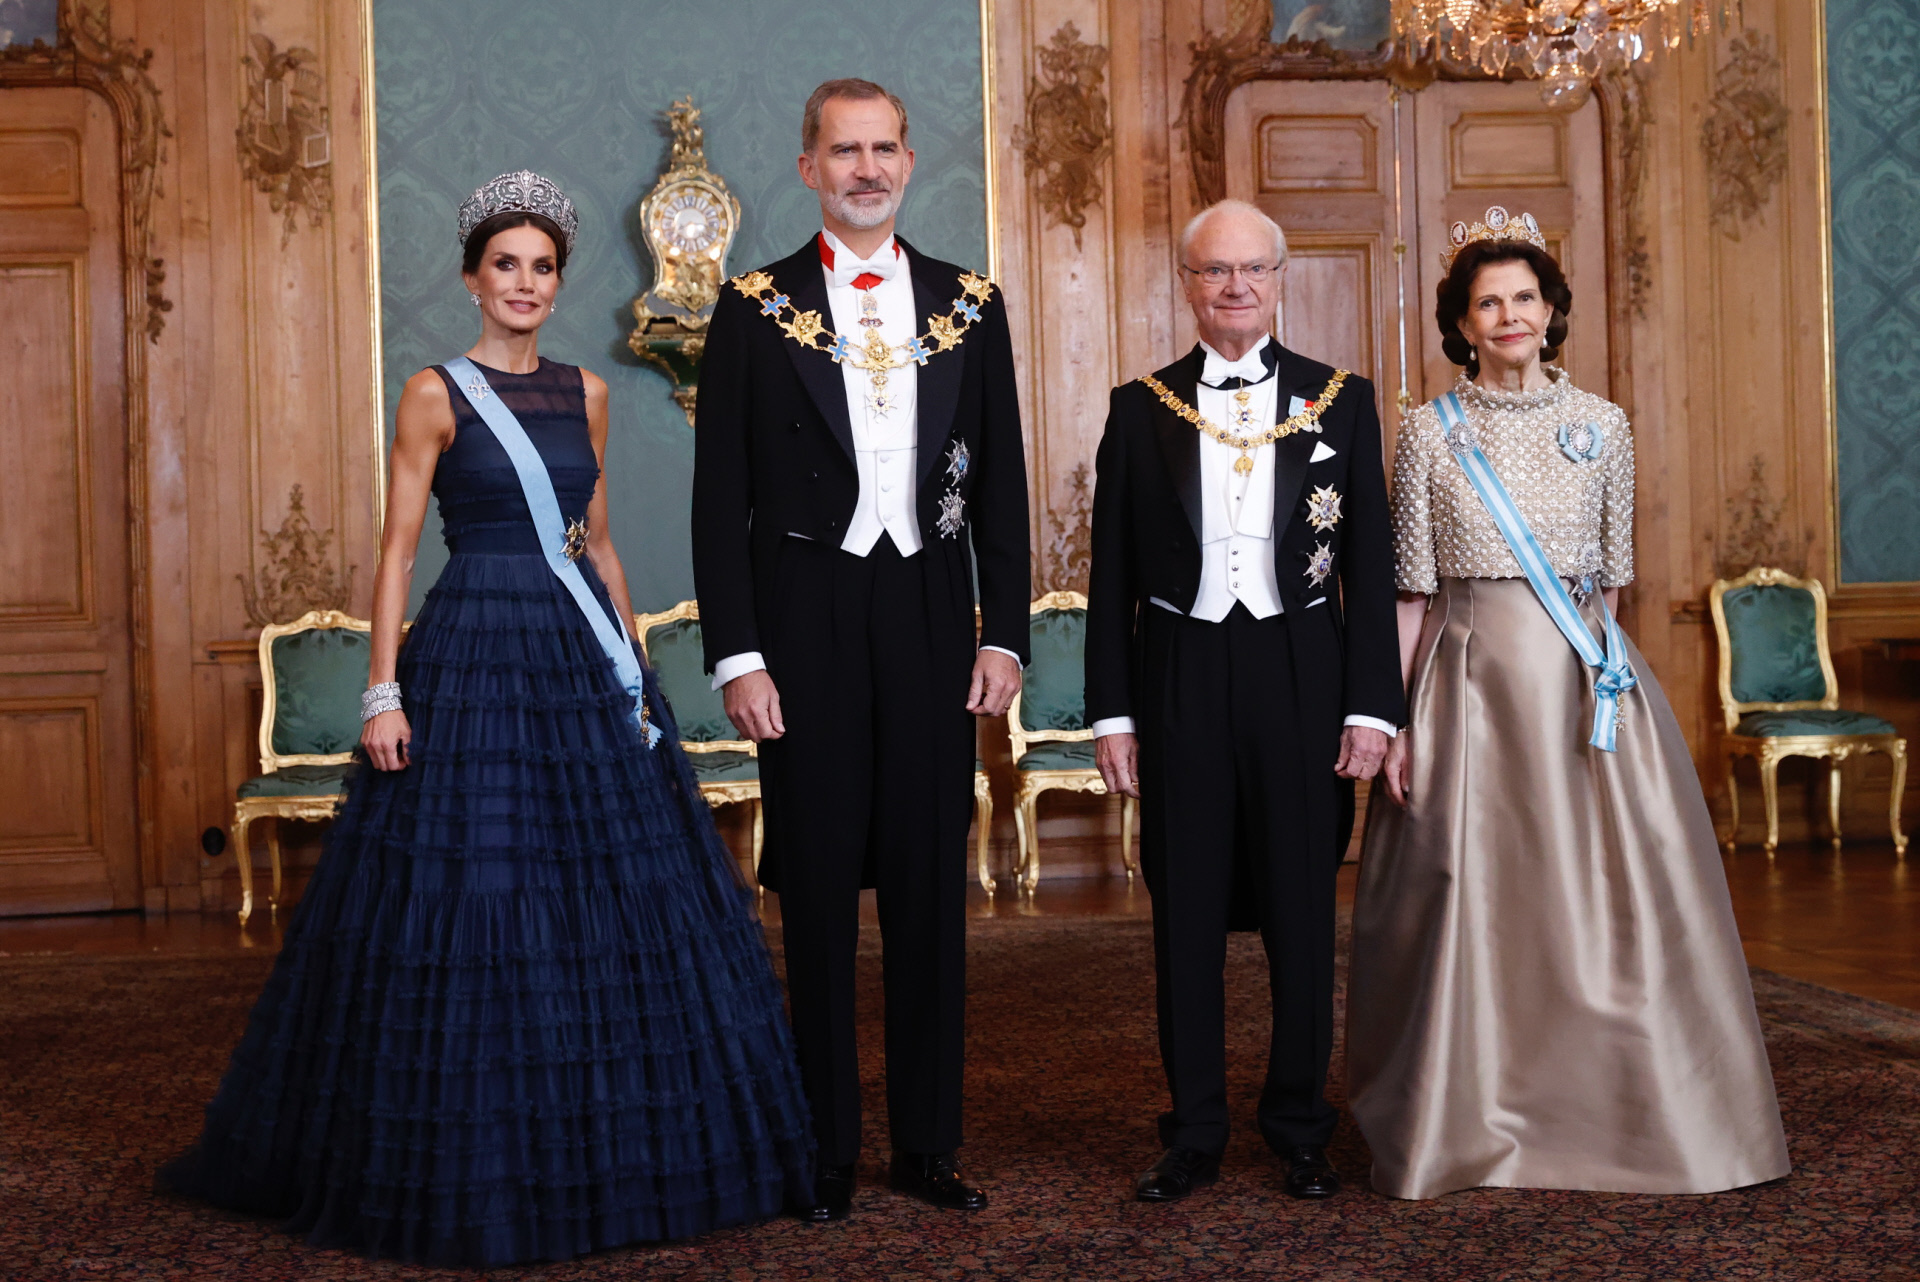 Los reyes Felipe y Letizia con los reyes Carlos XVI Gustavo y Silvia.